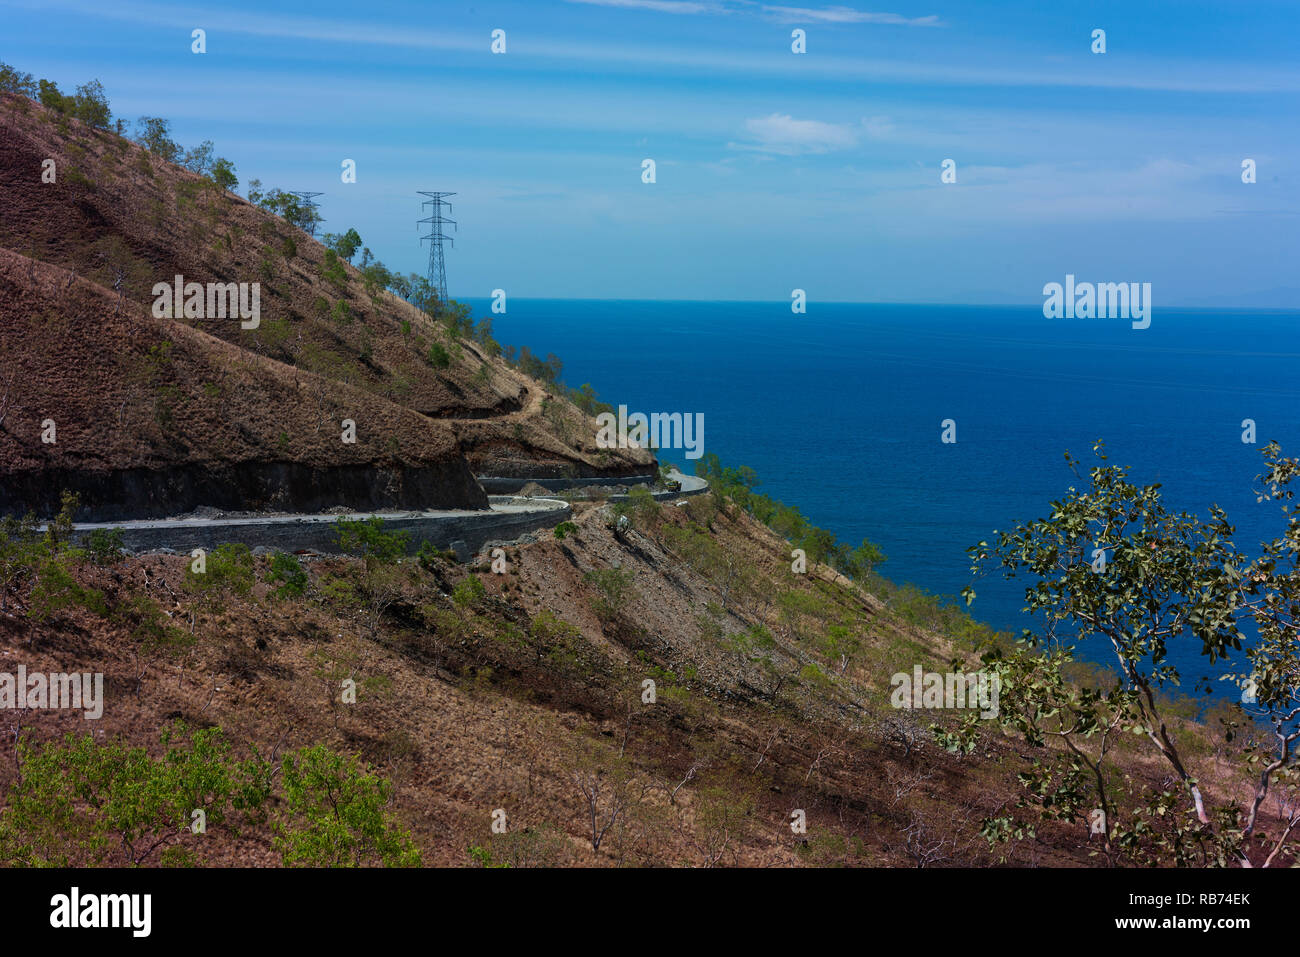 Una carretera recién construida en la costa norte de Timor Leste en el final de la estación seca. Foto de stock